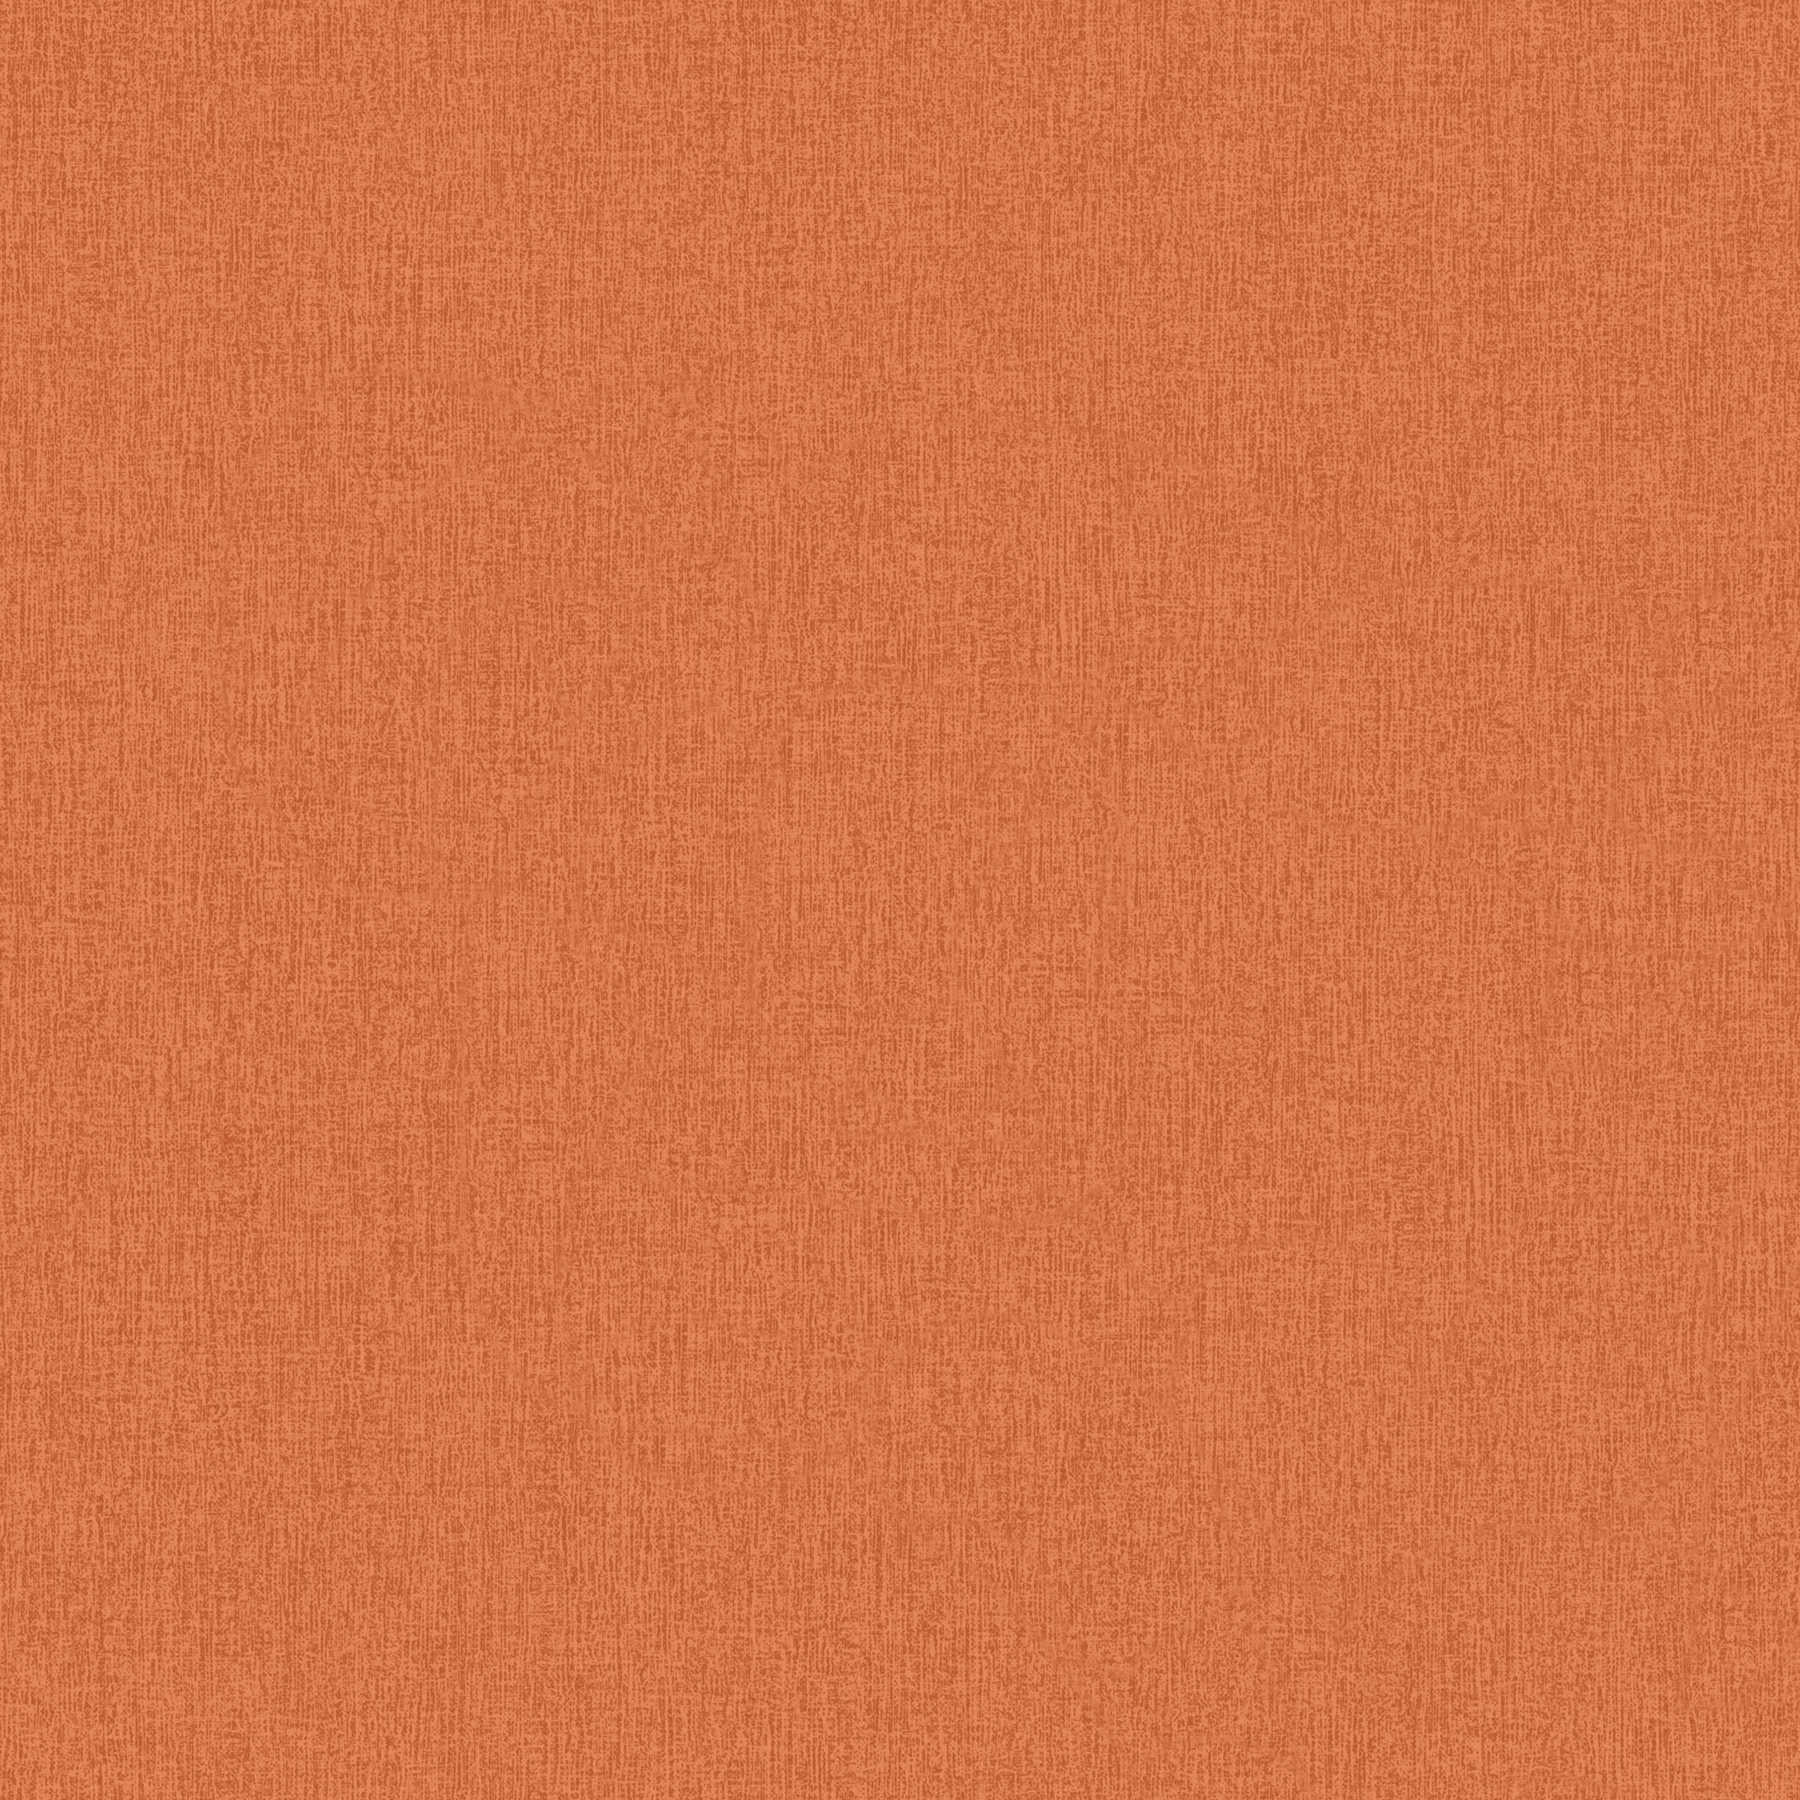 Papier peint uni chiné avec structure tissée - orange
